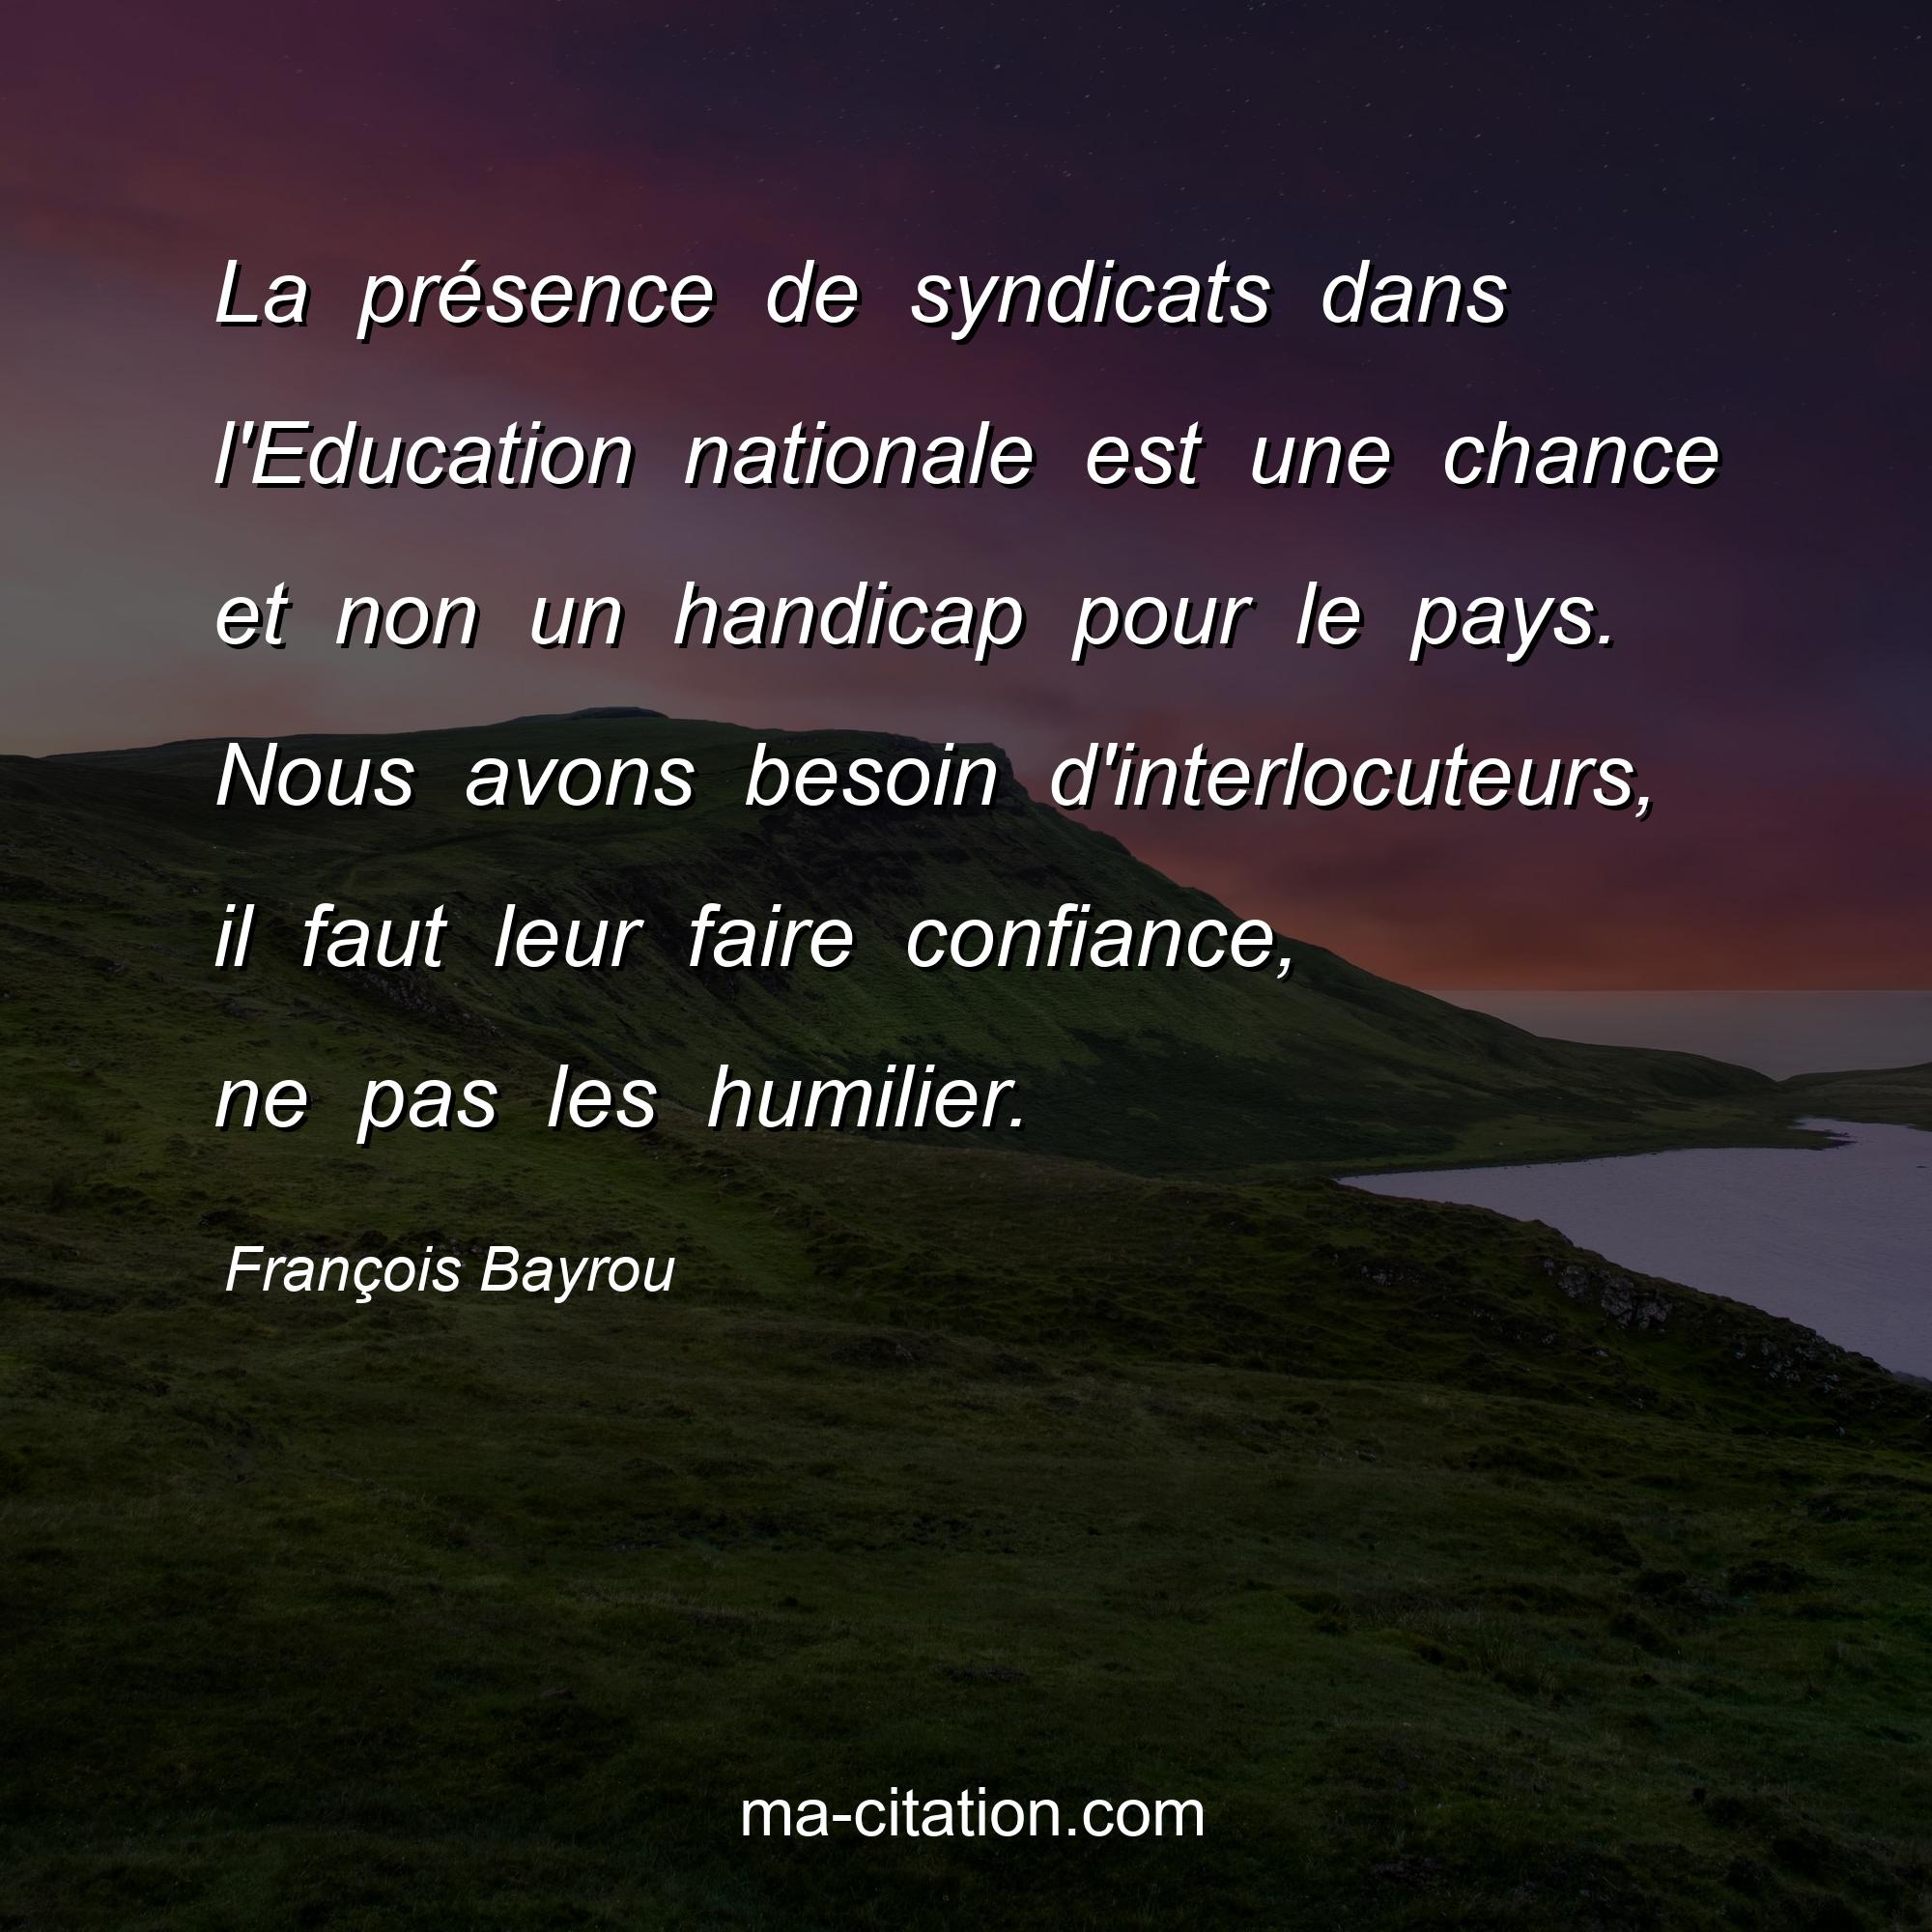 François Bayrou : La présence de syndicats dans l'Education nationale est une chance et non un handicap pour le pays. Nous avons besoin d'interlocuteurs, il faut leur faire confiance, ne pas les humilier.